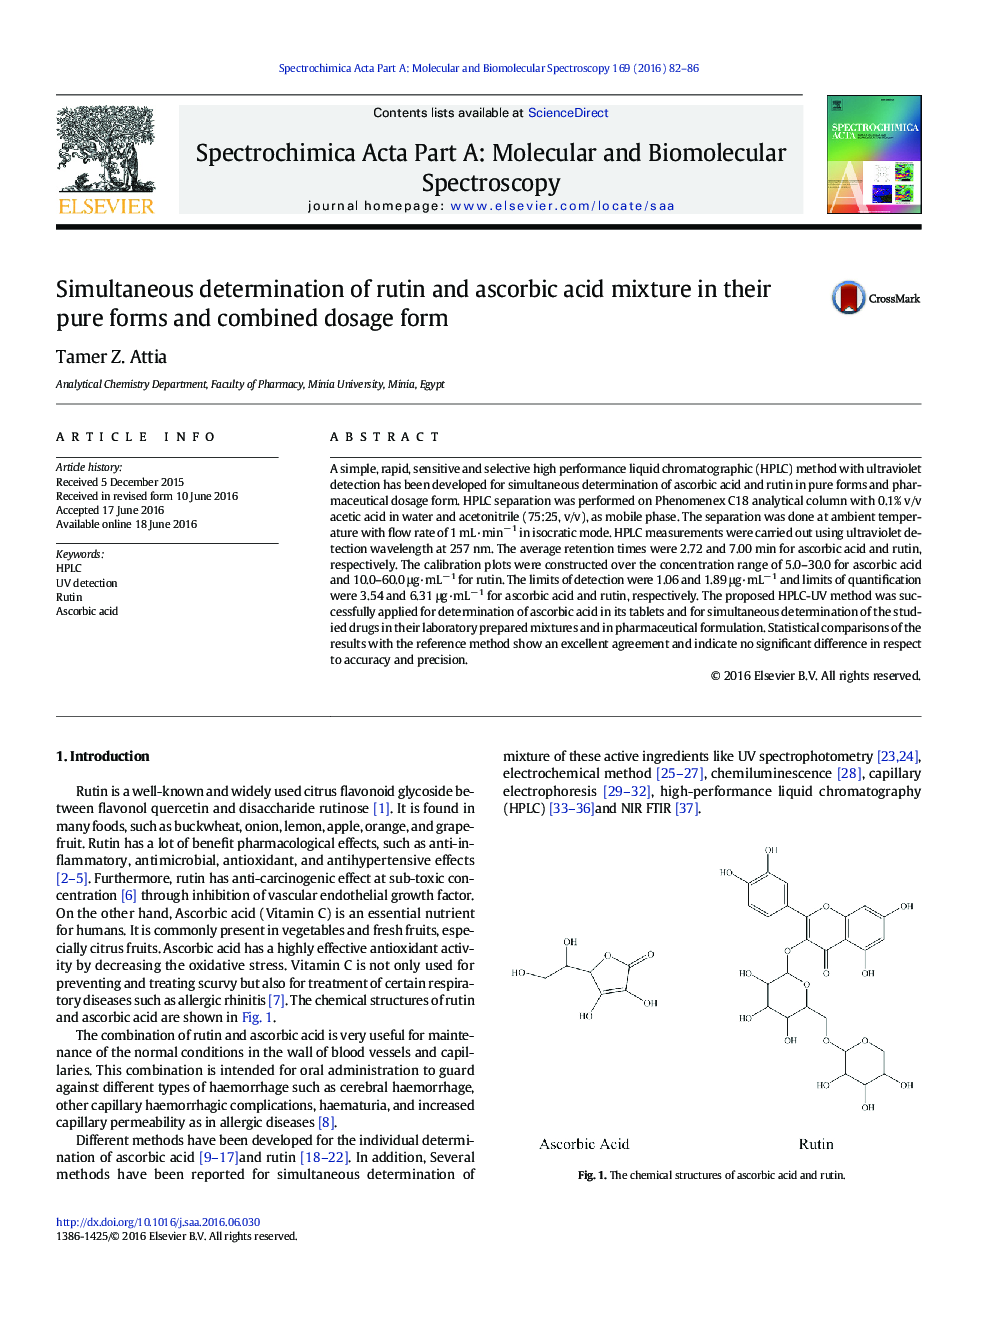 تعیین همزمان ترکیب مخلوط روتین و اسید اسکوربیک در فرم های خالص و فرم دوزهای ترکیبی 